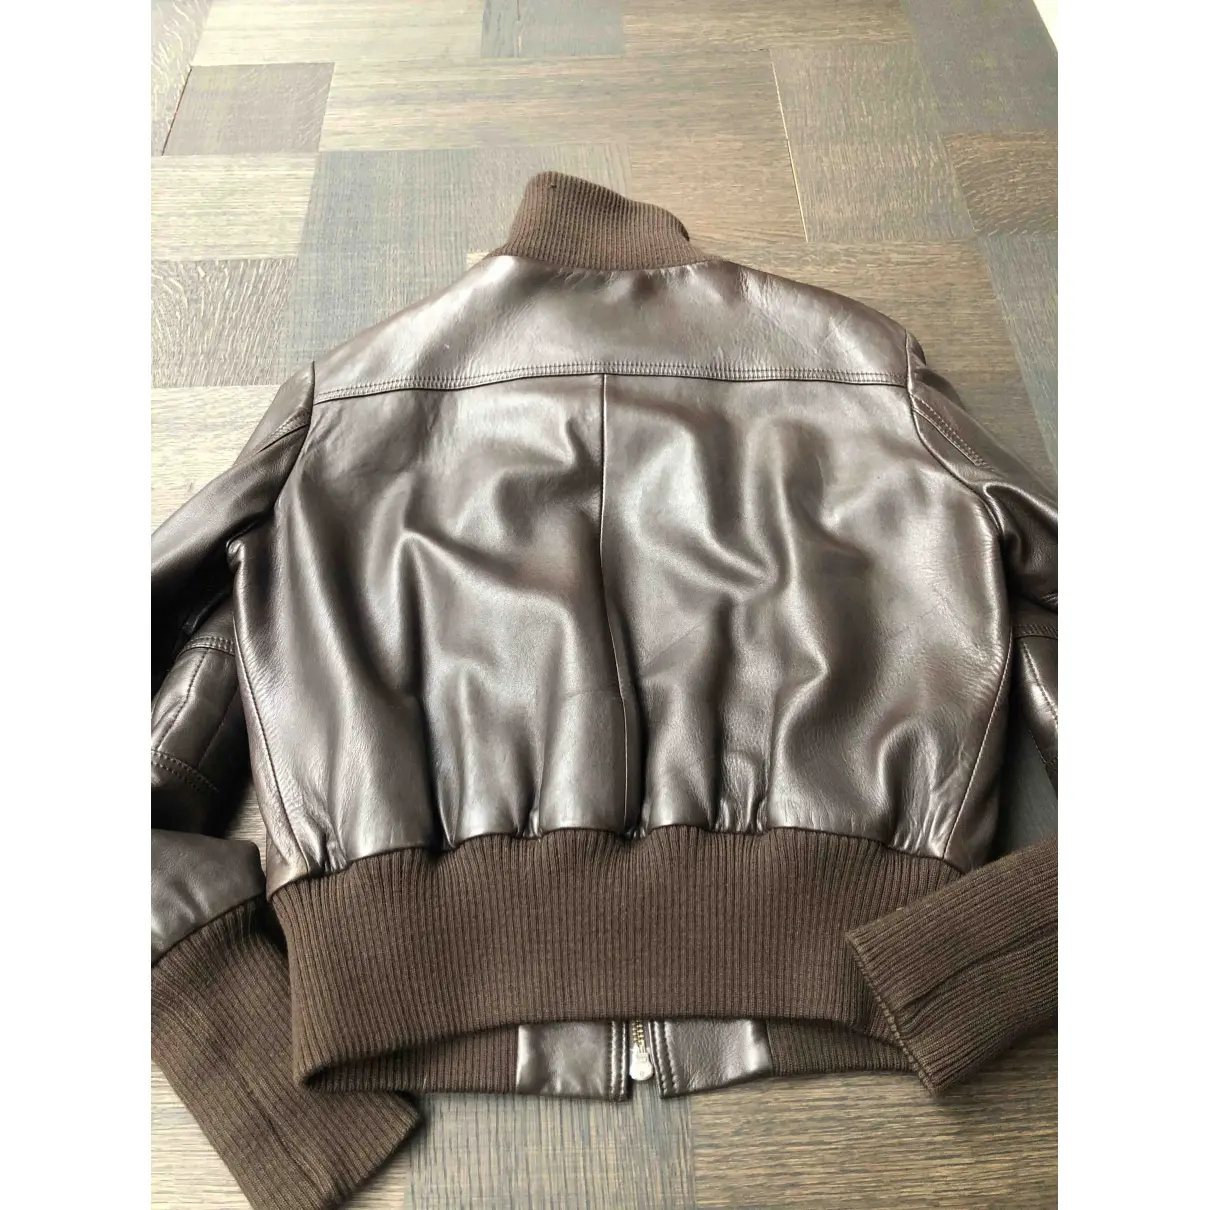 Buy Enes Leather jacket online